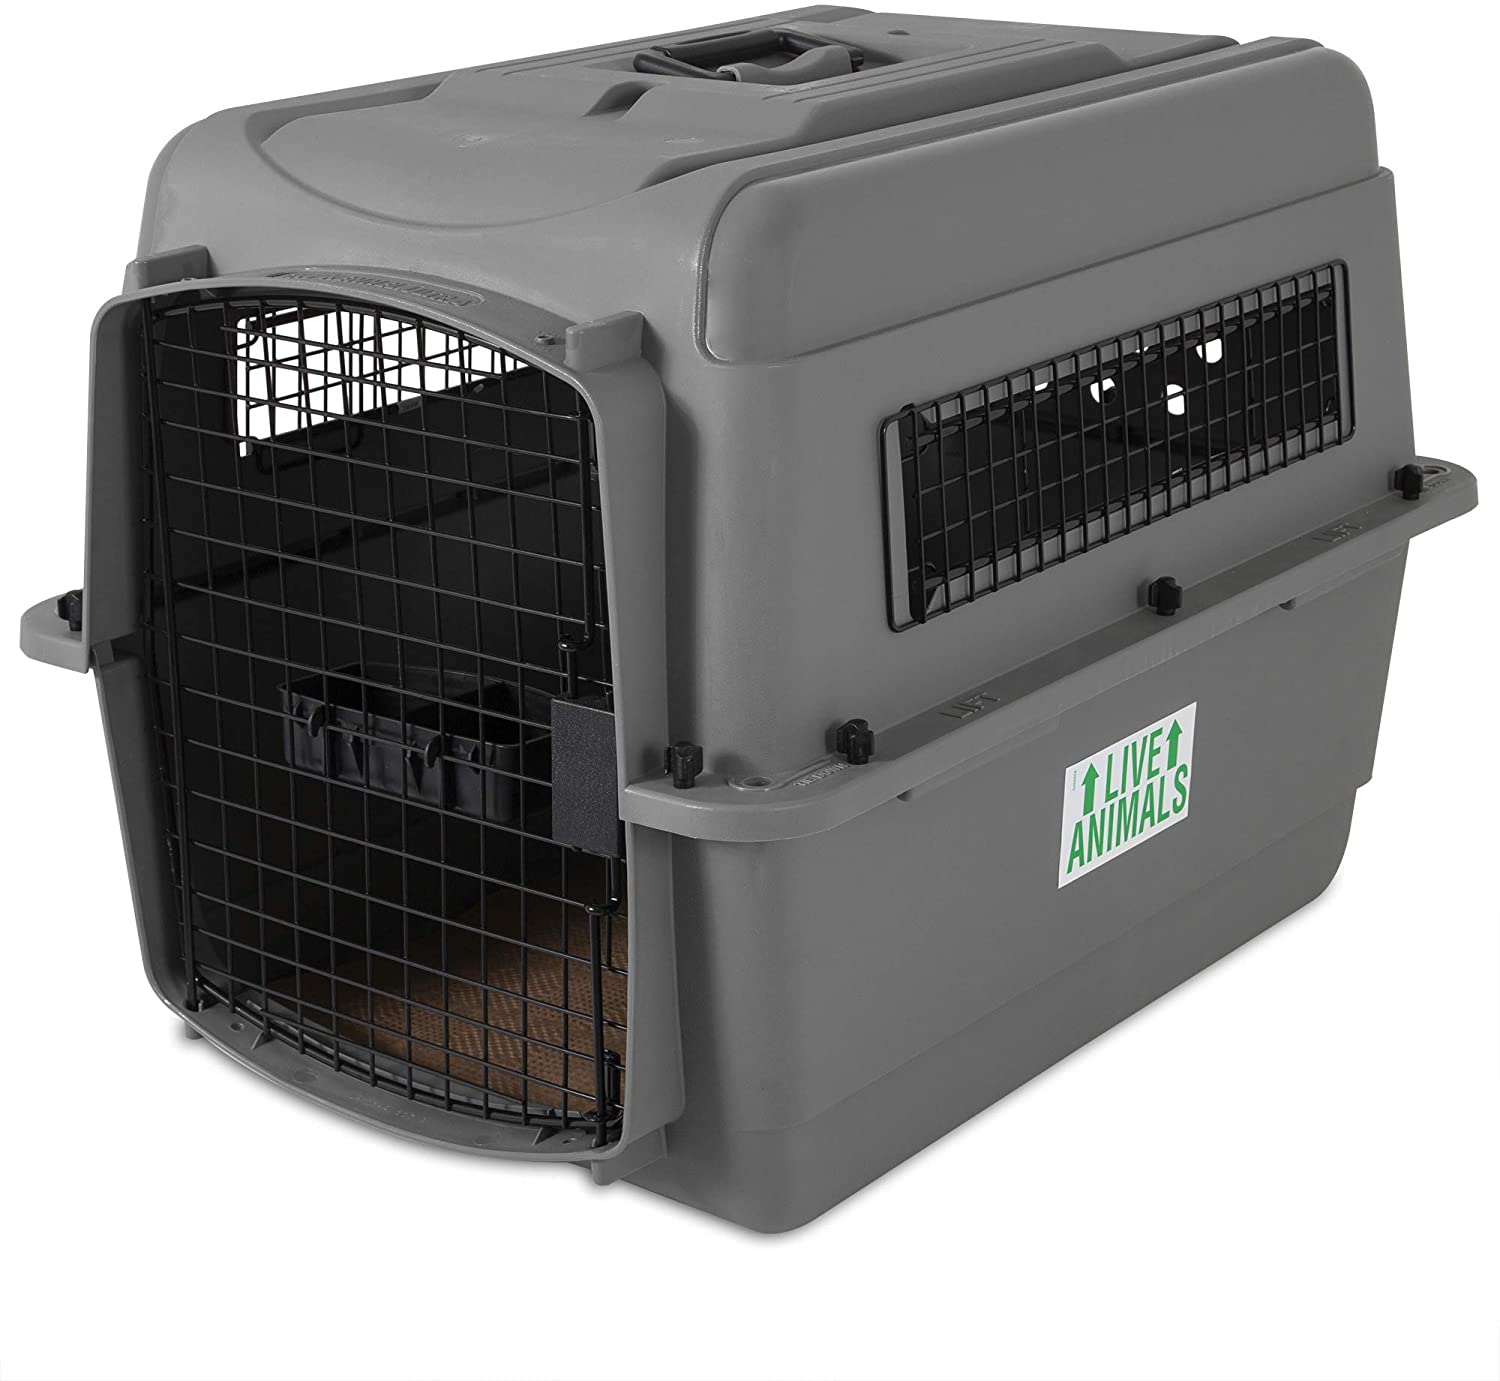 amazon uk dog travel crate